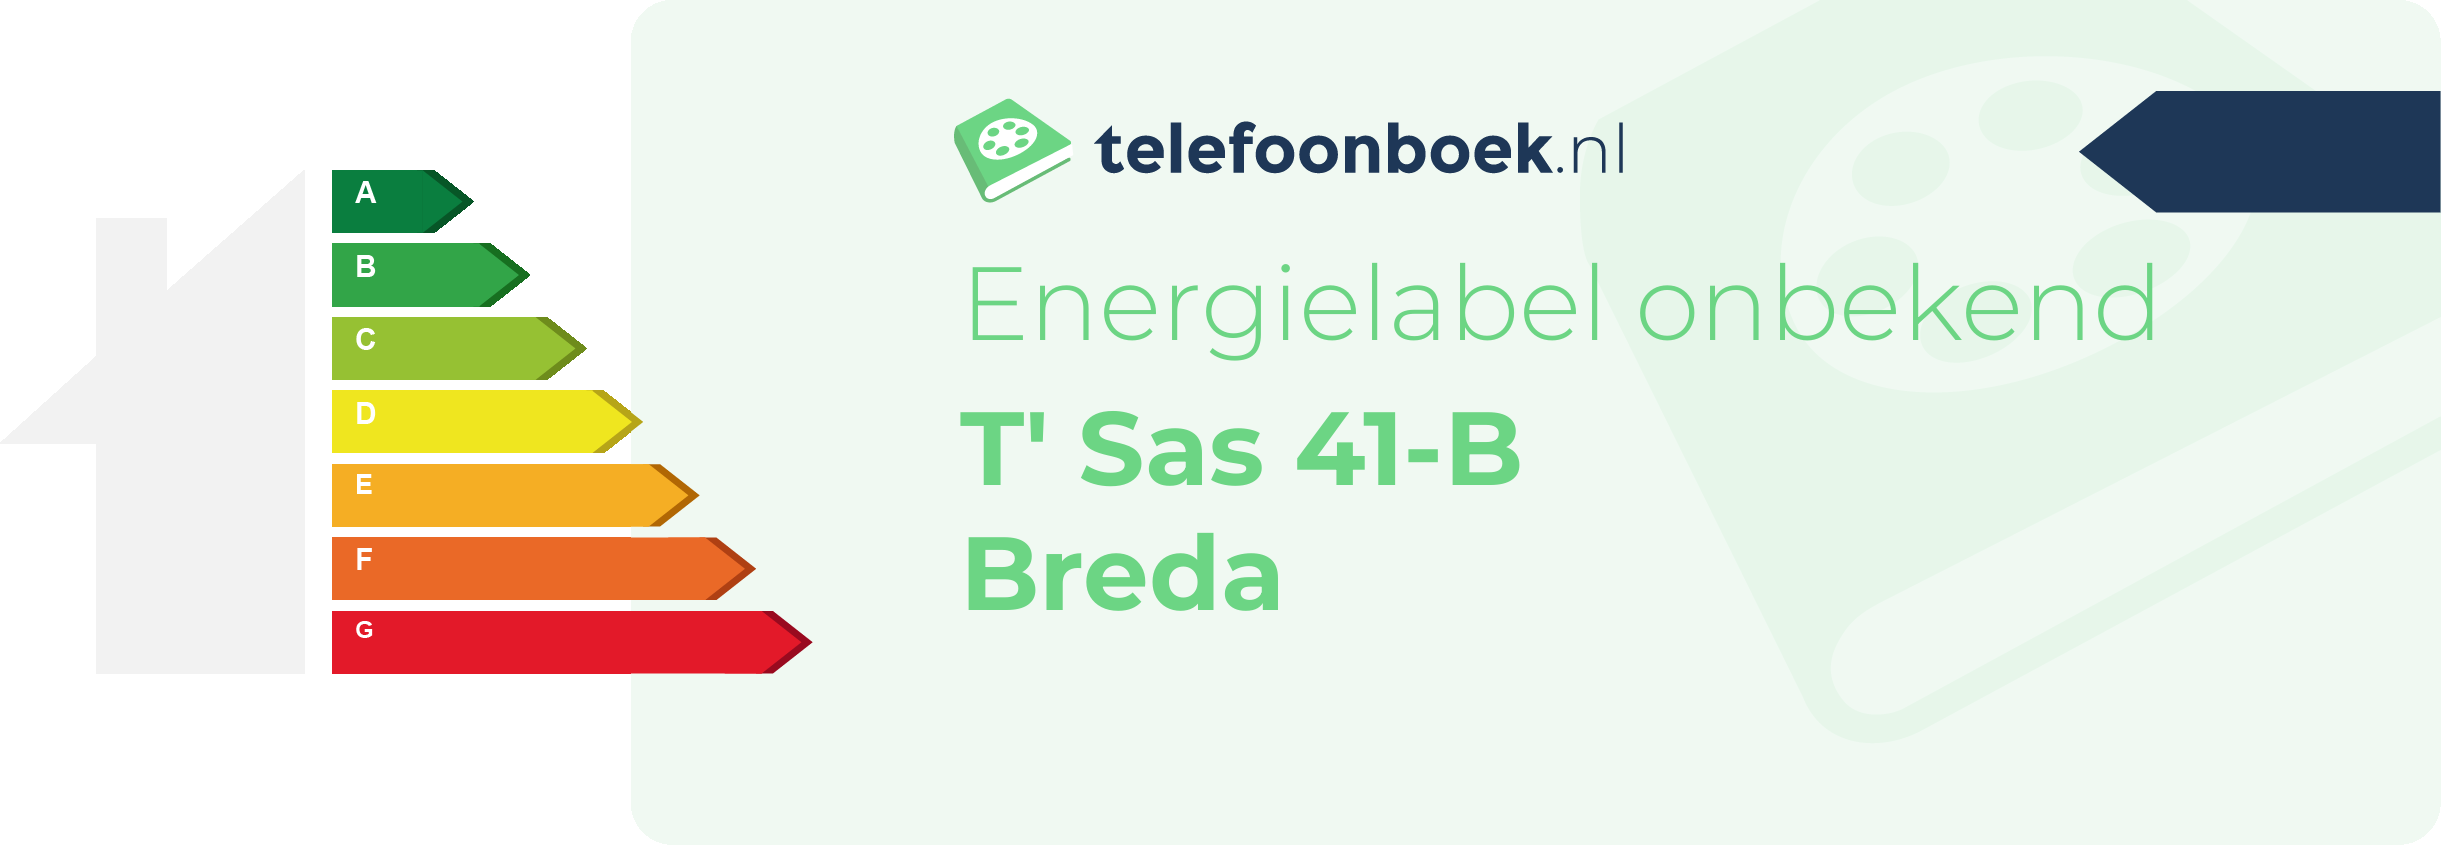 Energielabel T' Sas 41-B Breda